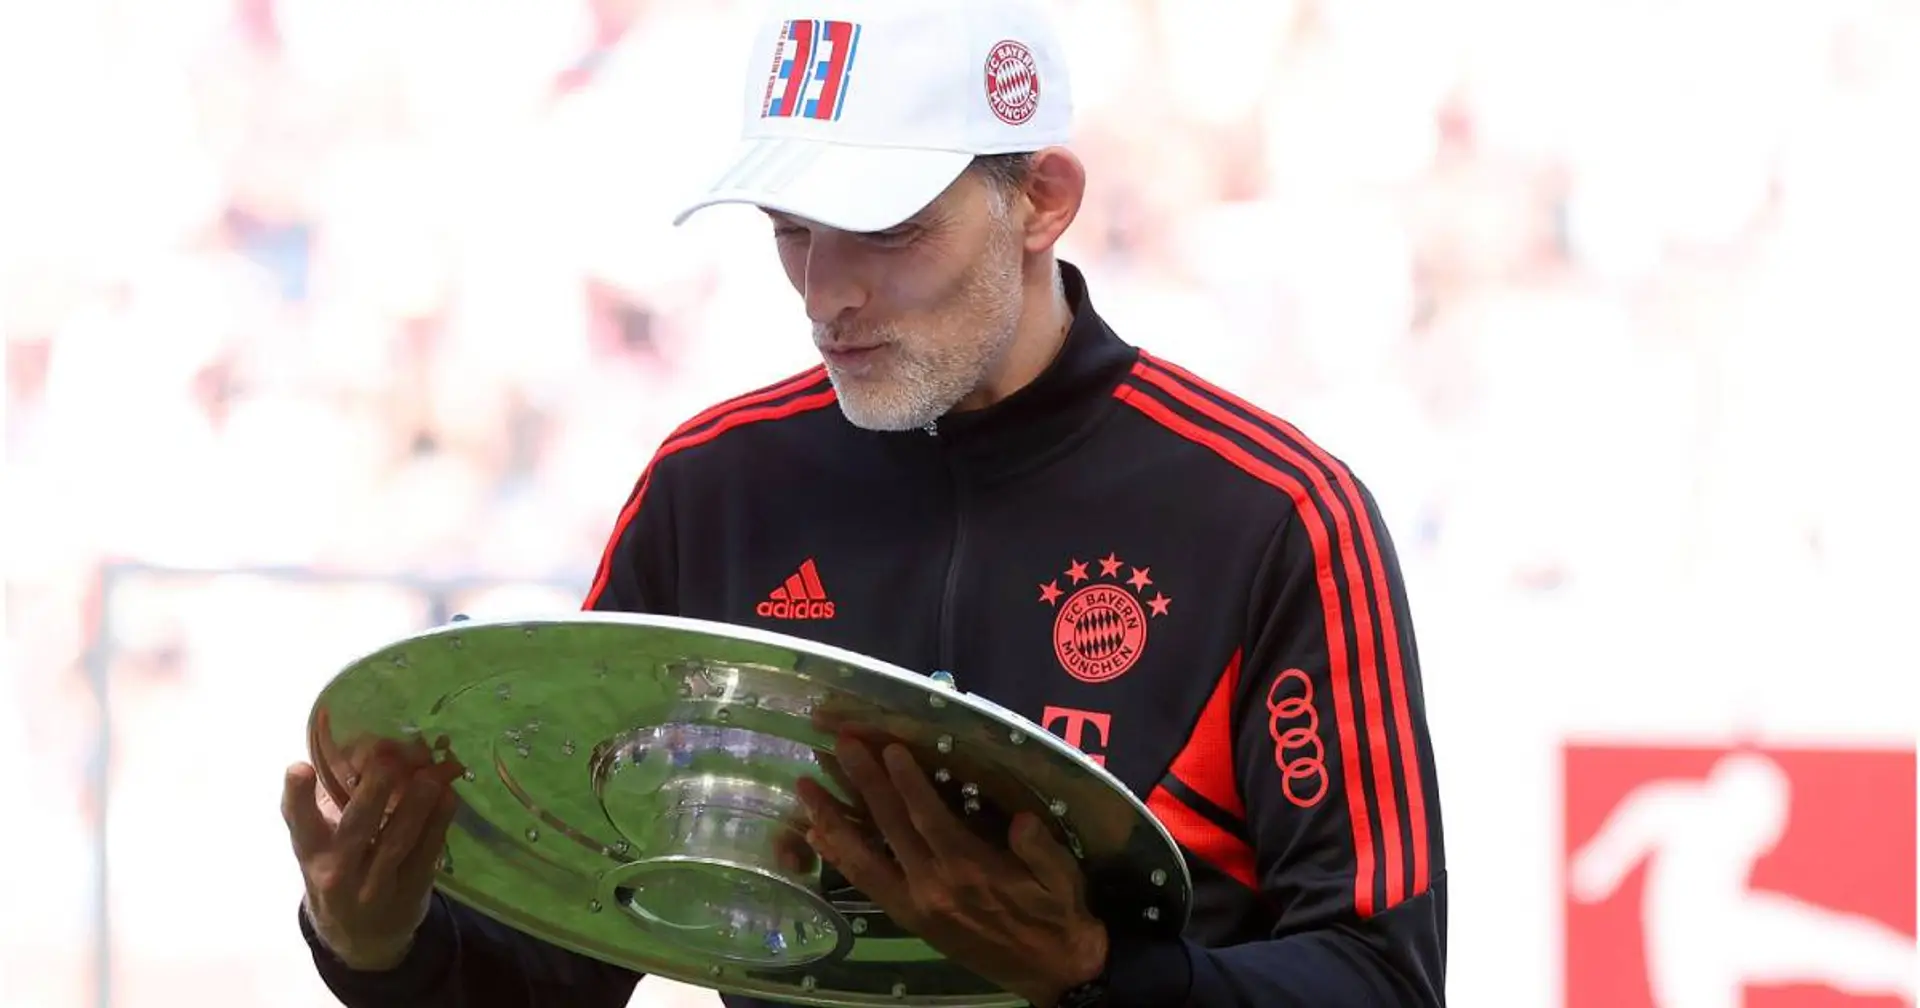 Seinen einzigen Bayern-Titel sieht Tuchel etwas kritisch: "Ich hätte lieber eine deutsche Meisterschaft gefeiert, wo ich die ganze Saison Trainer bin"